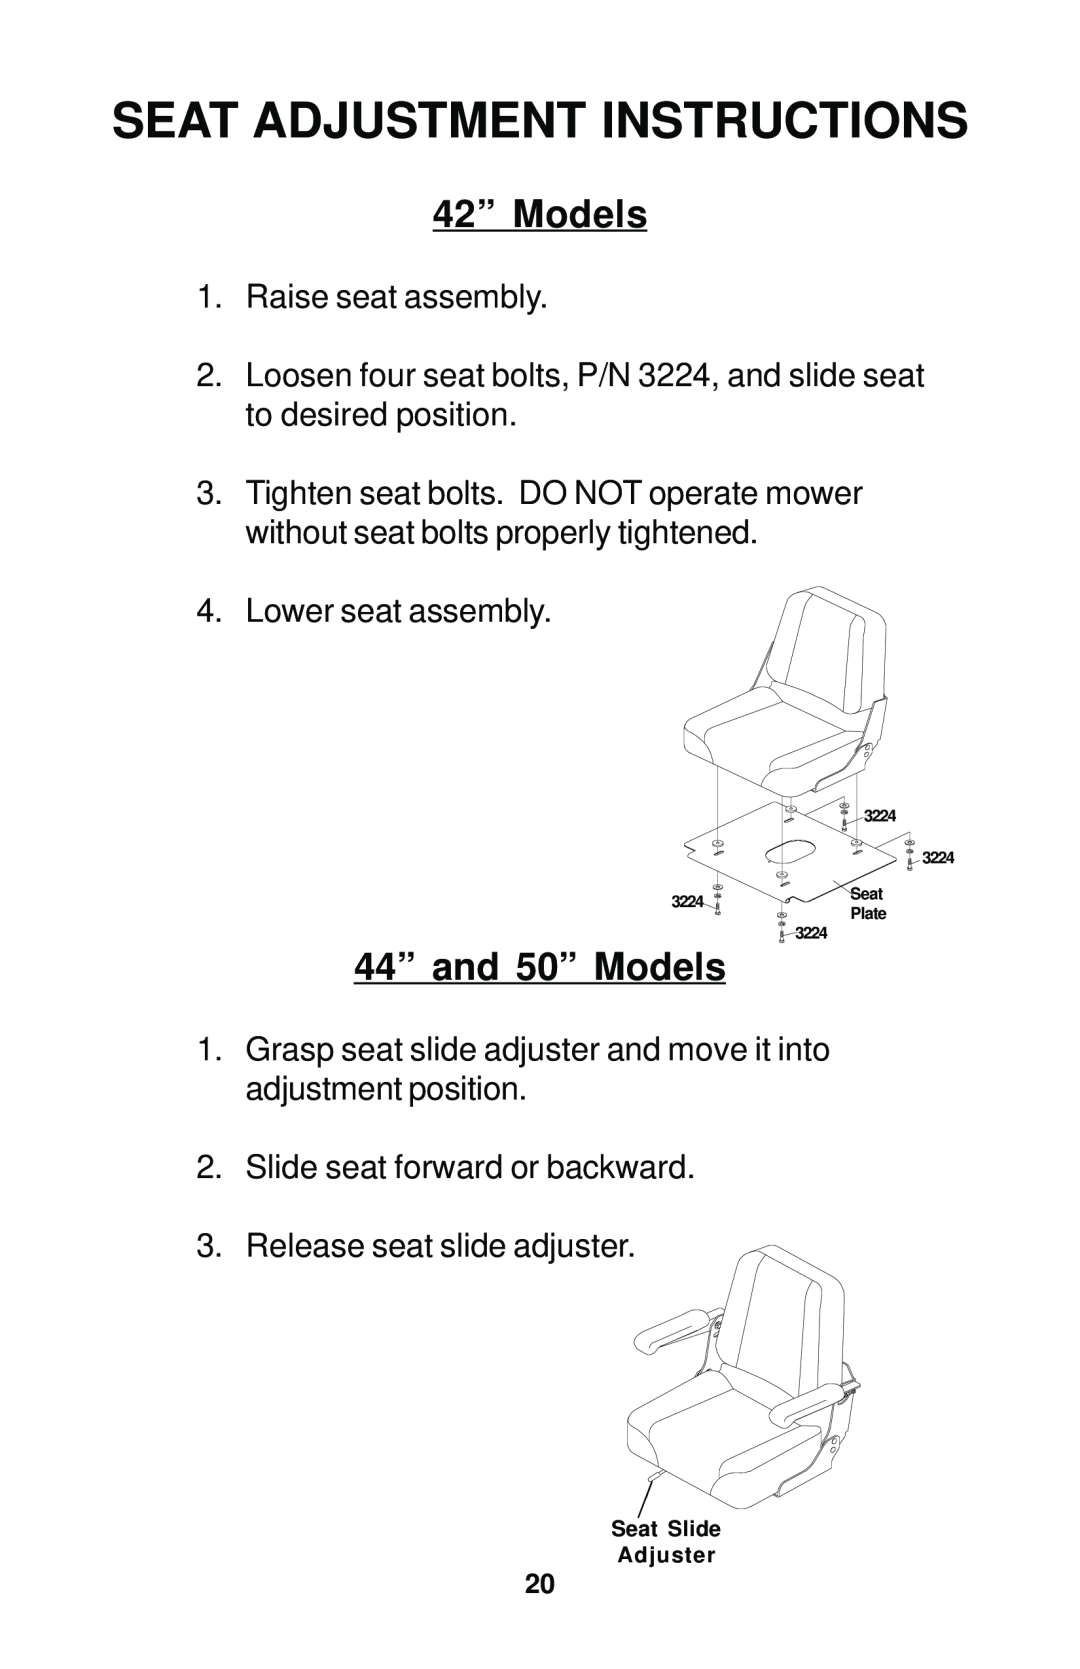 Dixon 17823-0704 manual Seat Adjustment Instructions, 42” Models, 44” and 50” Models 